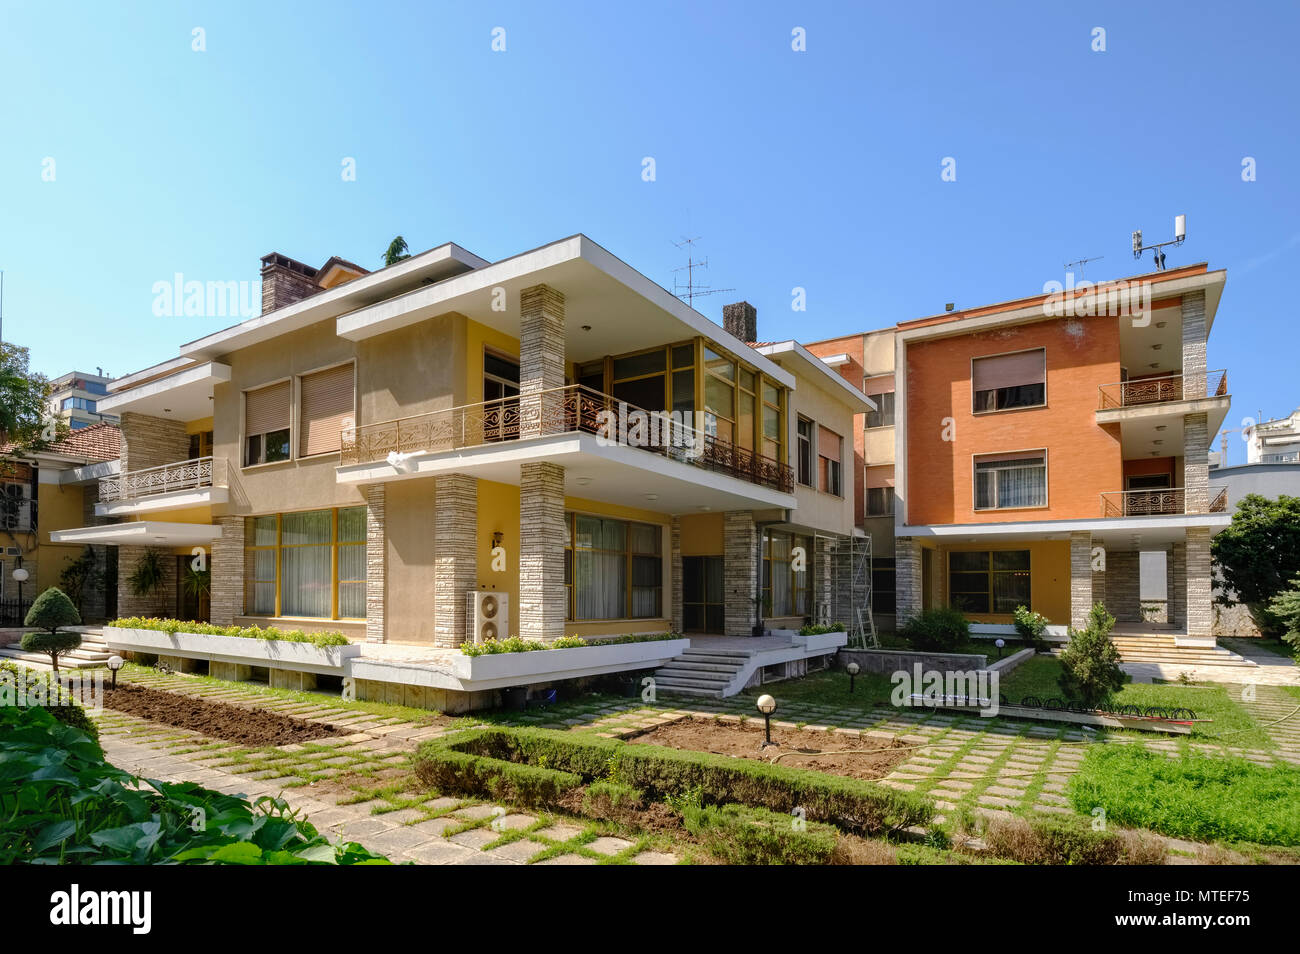 Villa d'Enver Hoxha, de 1944 à 1985 le dictateur de la République populaire socialiste d'Albanie, quartier Blloku, Tirana, Albanie Banque D'Images